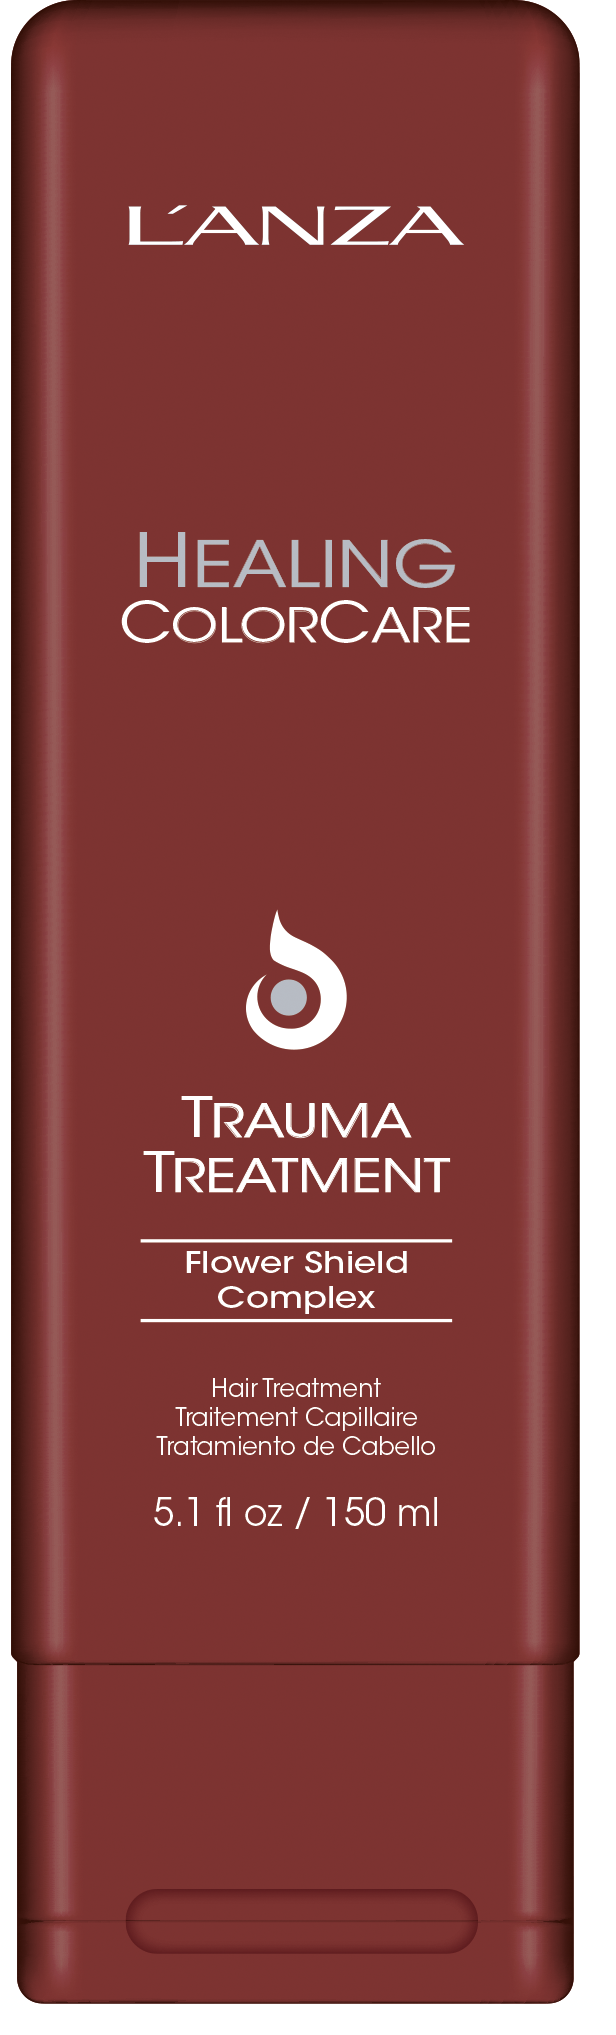 L'ANZA Healing Colorcare Trauma Treatment Conditioner